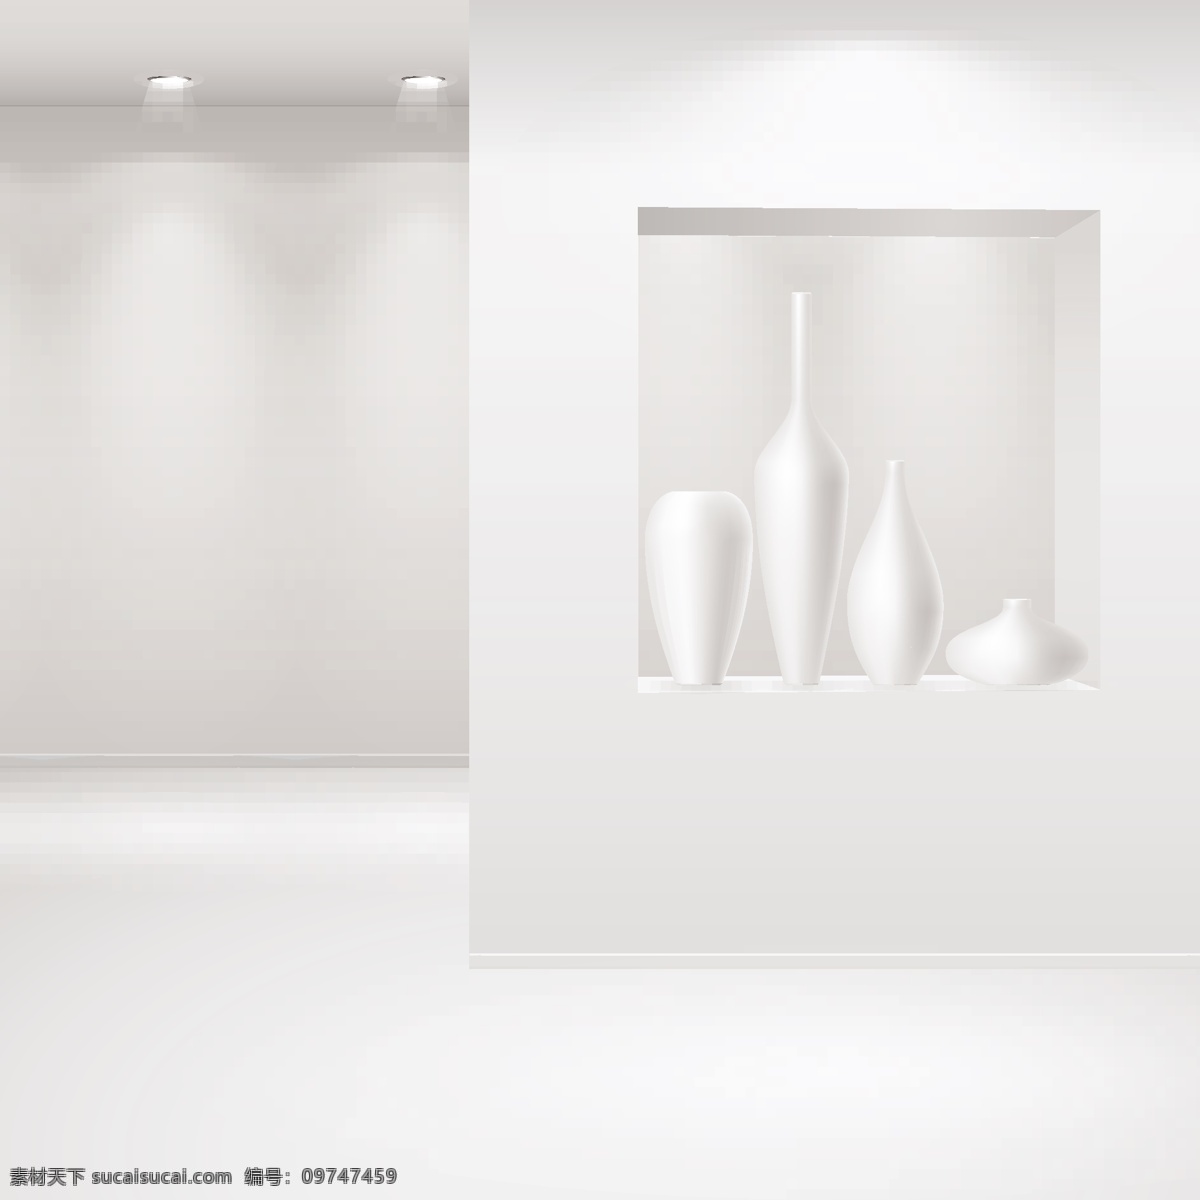 展厅 画廊 模板 矢量 二 格式 花瓶 画展 空白 空间 射灯 矢量素材 室内 展览 展示 关键字 矢量图 其他矢量图